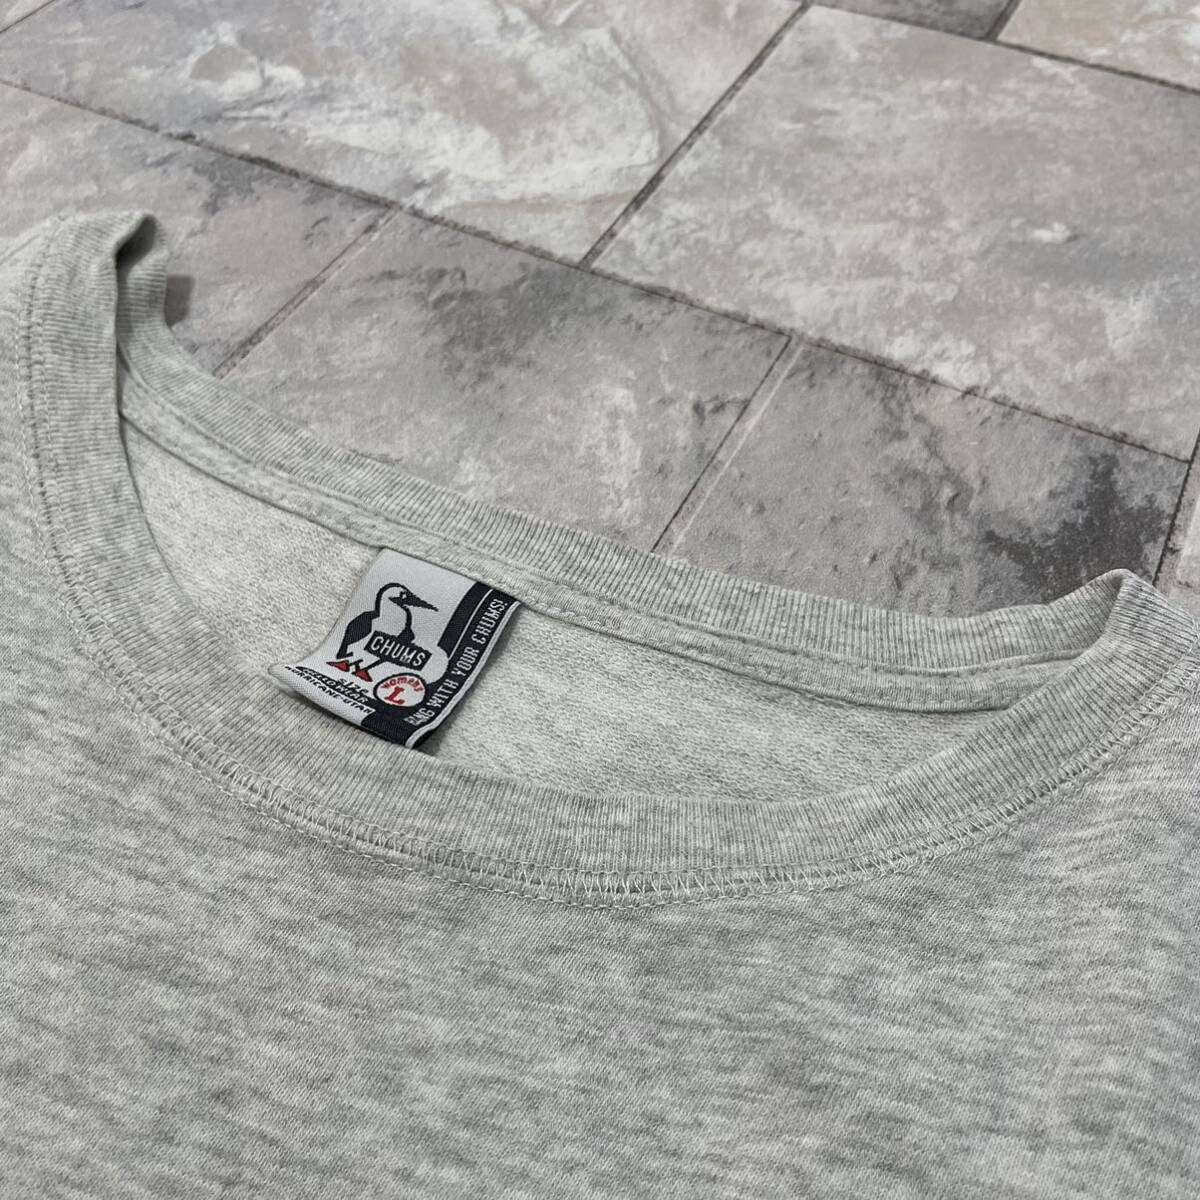 CHUMS チャムス Tシャツ T-shirt TEE 半袖 刺繍ロゴ 胸ポケット アウトドア カジュアル グレー レディース サイズL 玉SS1806_画像7